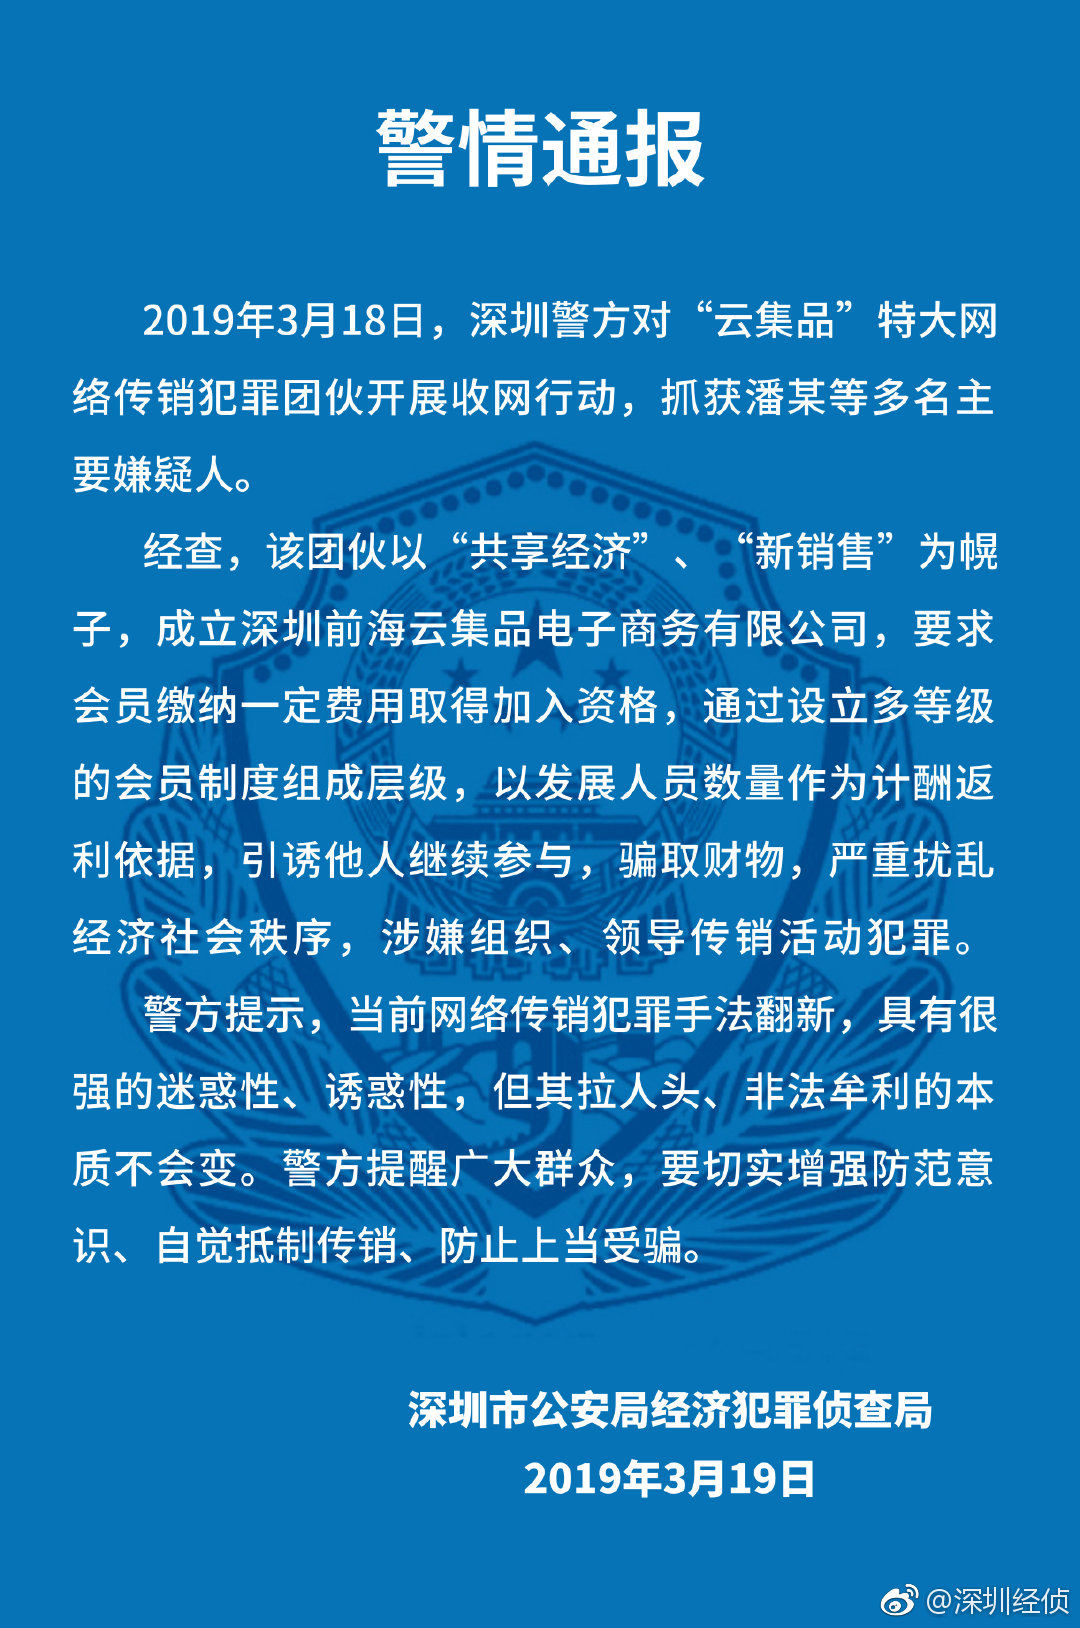 图片来源：深圳市公安局经济犯罪侦查局官方微博